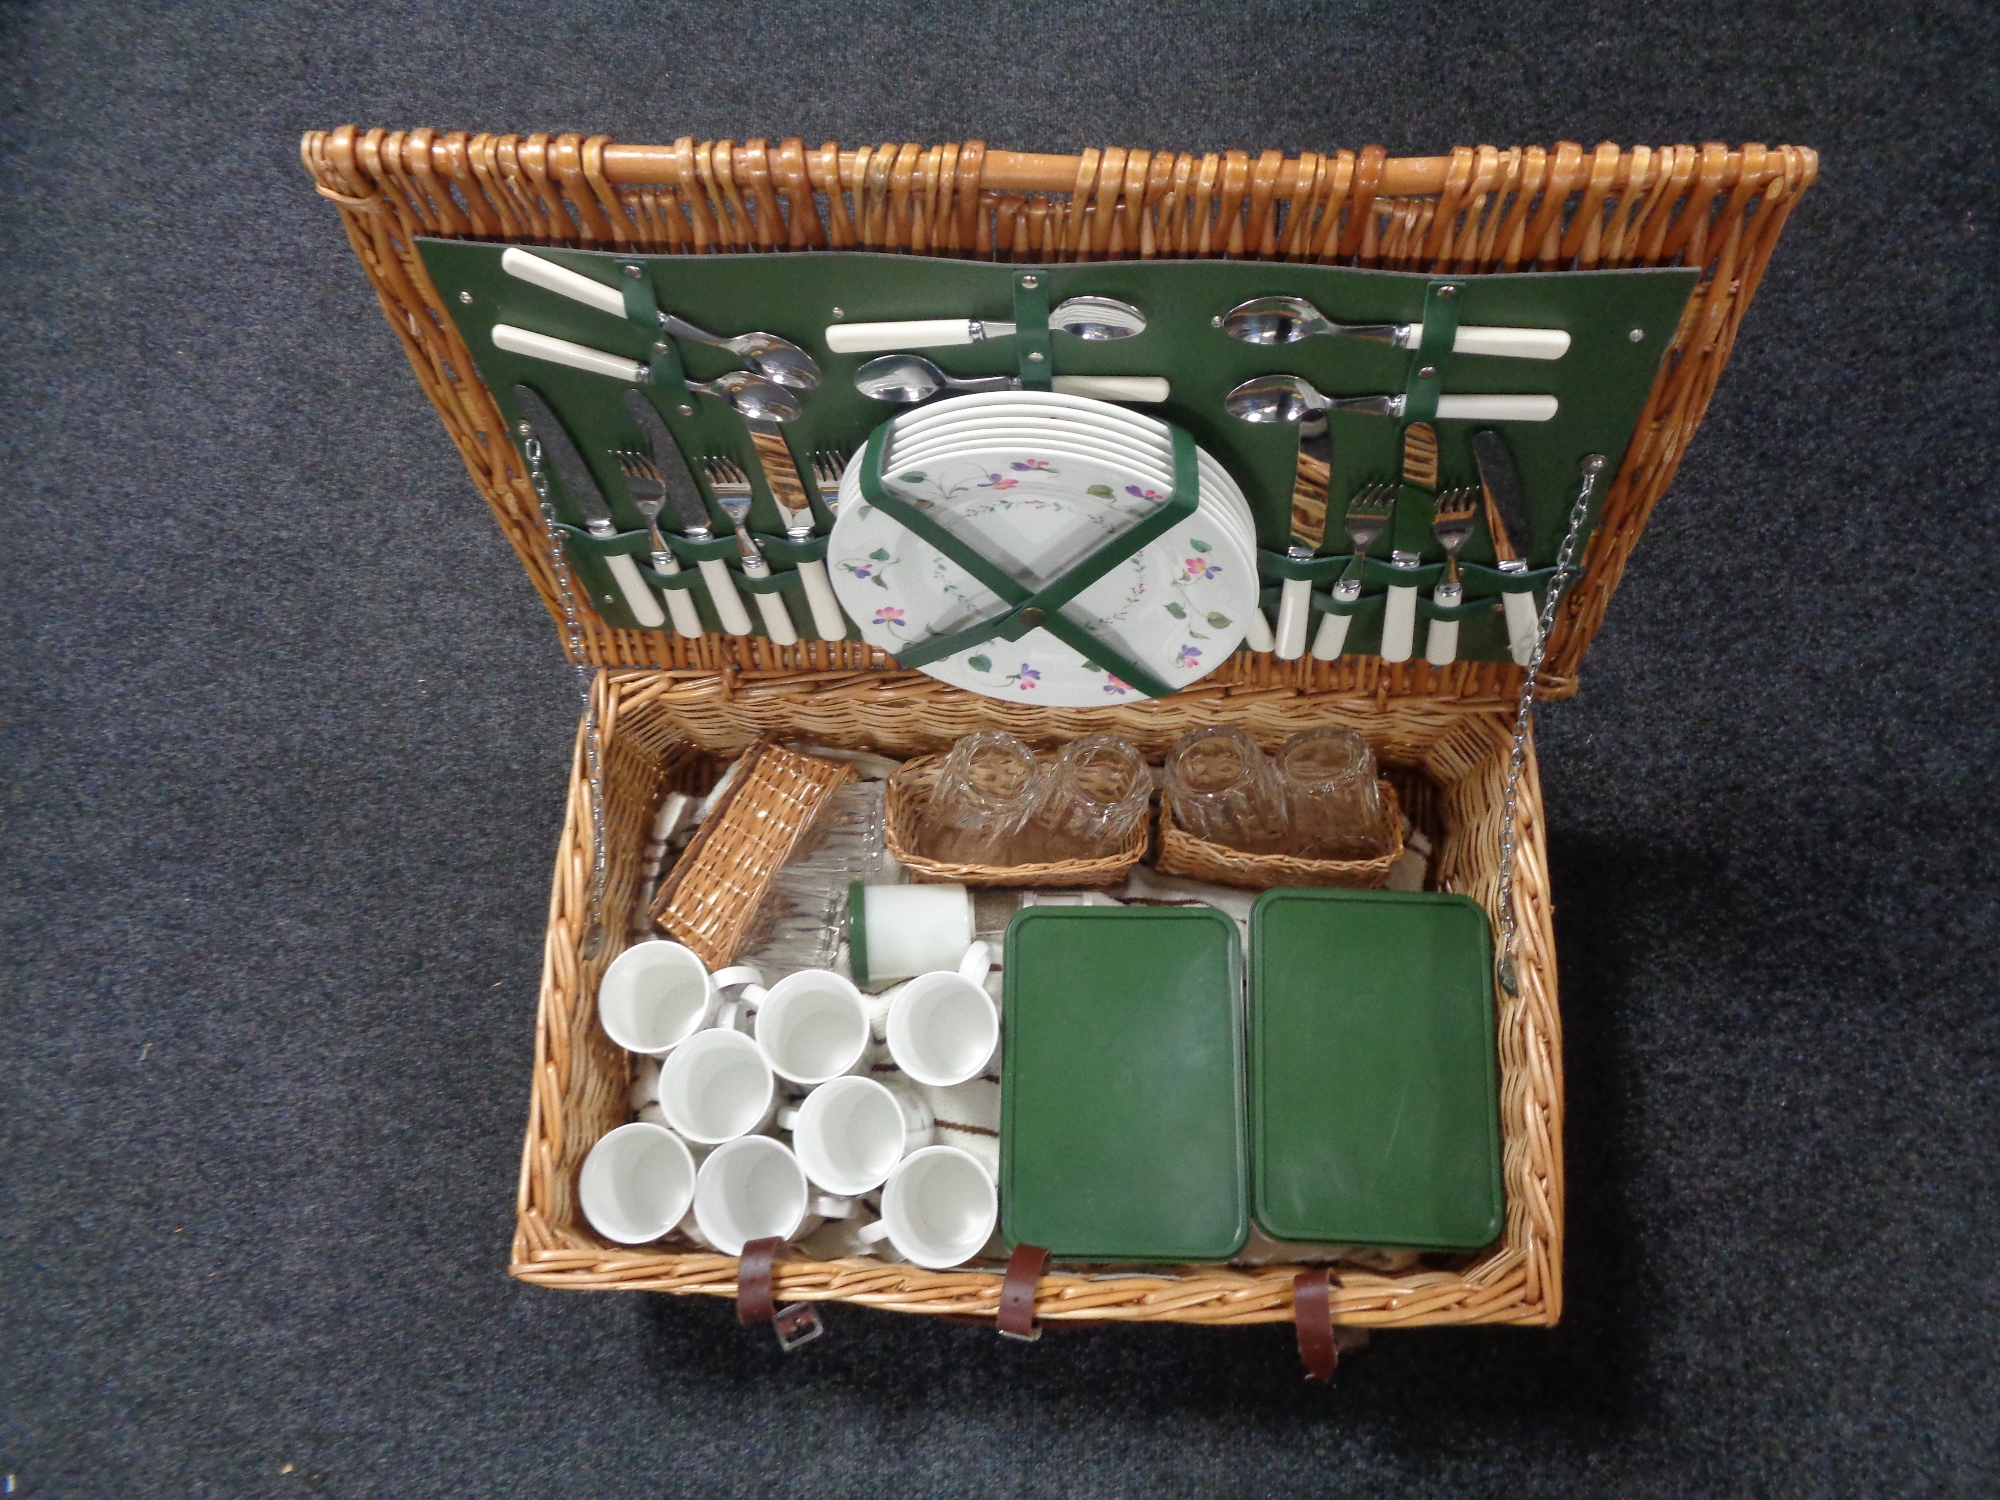 A picnic set in wicker hamper